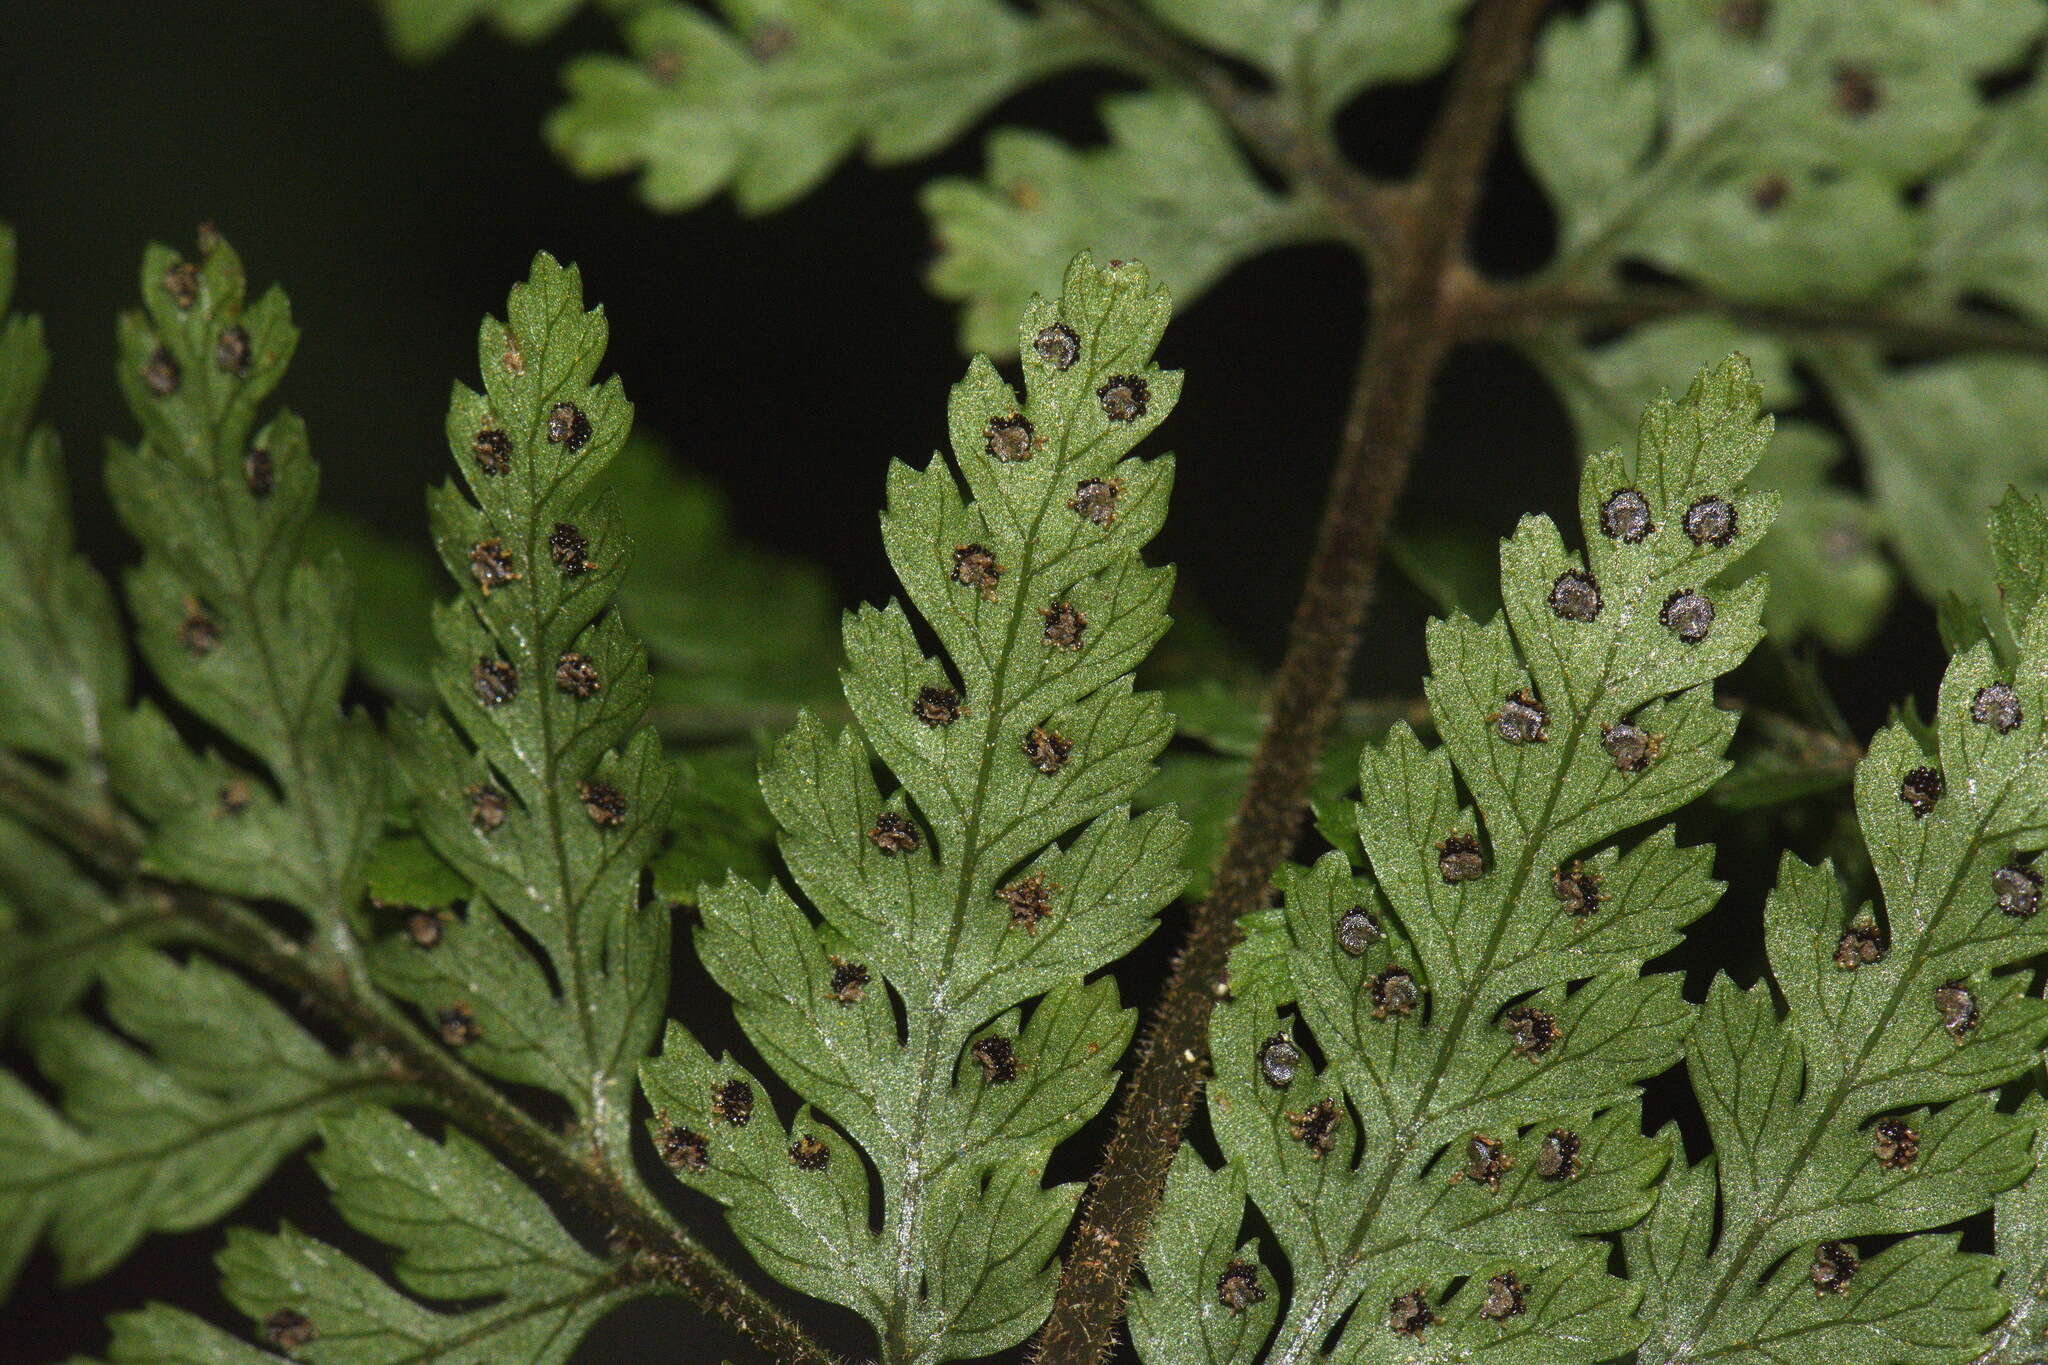 Image de Parapolystichum microsorum subsp. pentagulare (Colenso) Labiak, Sundue & R. C. Moran